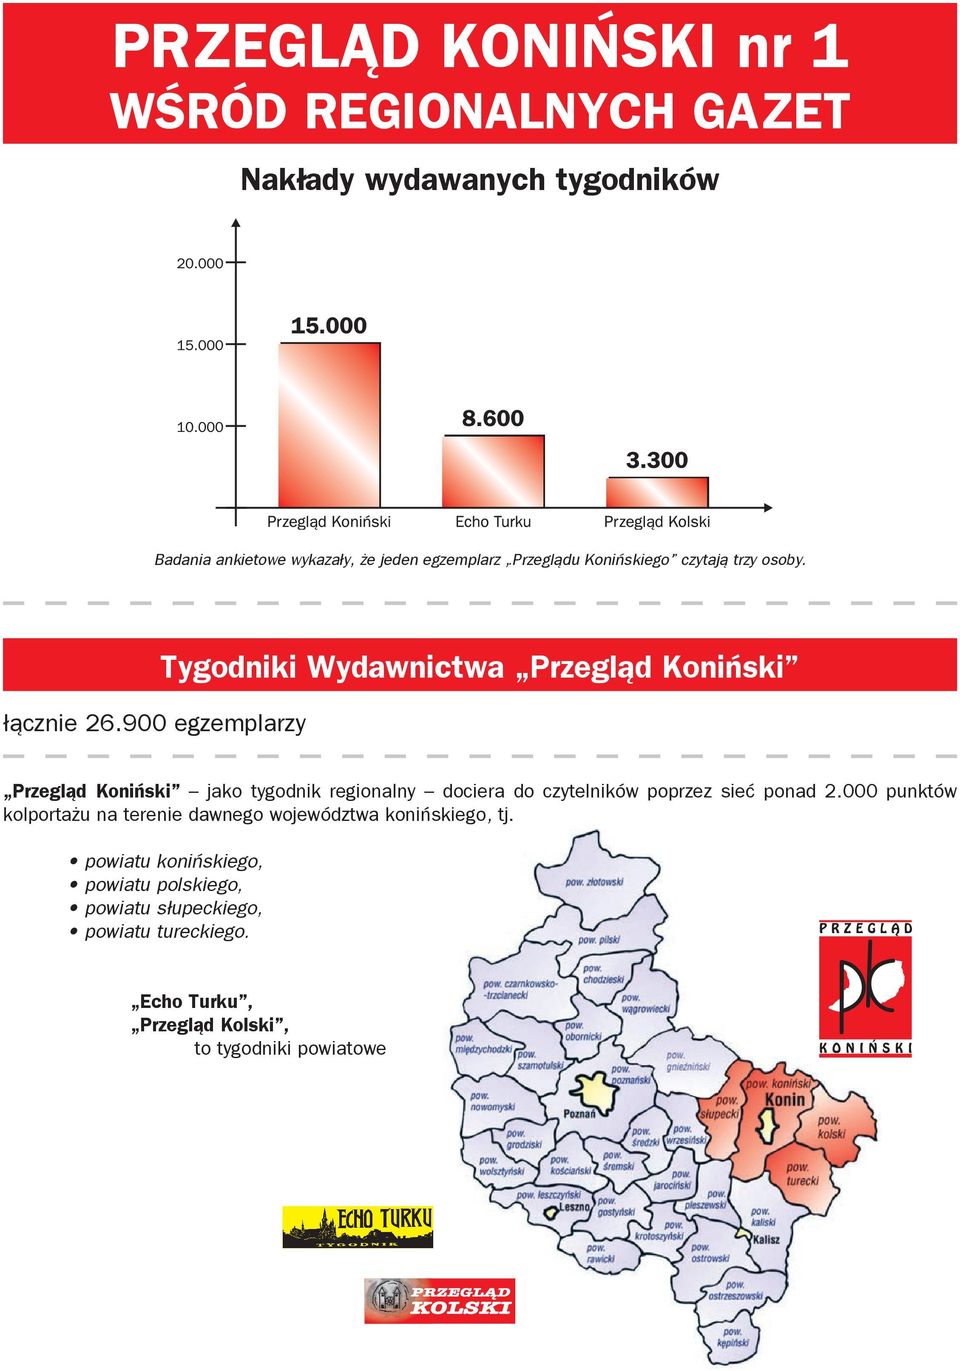 900 egzemplarzy Tygodniki Wydawnictwa Przegląd Koniński Przegląd Koniński jako tygodnik regionalny dociera do czytelników poprzez